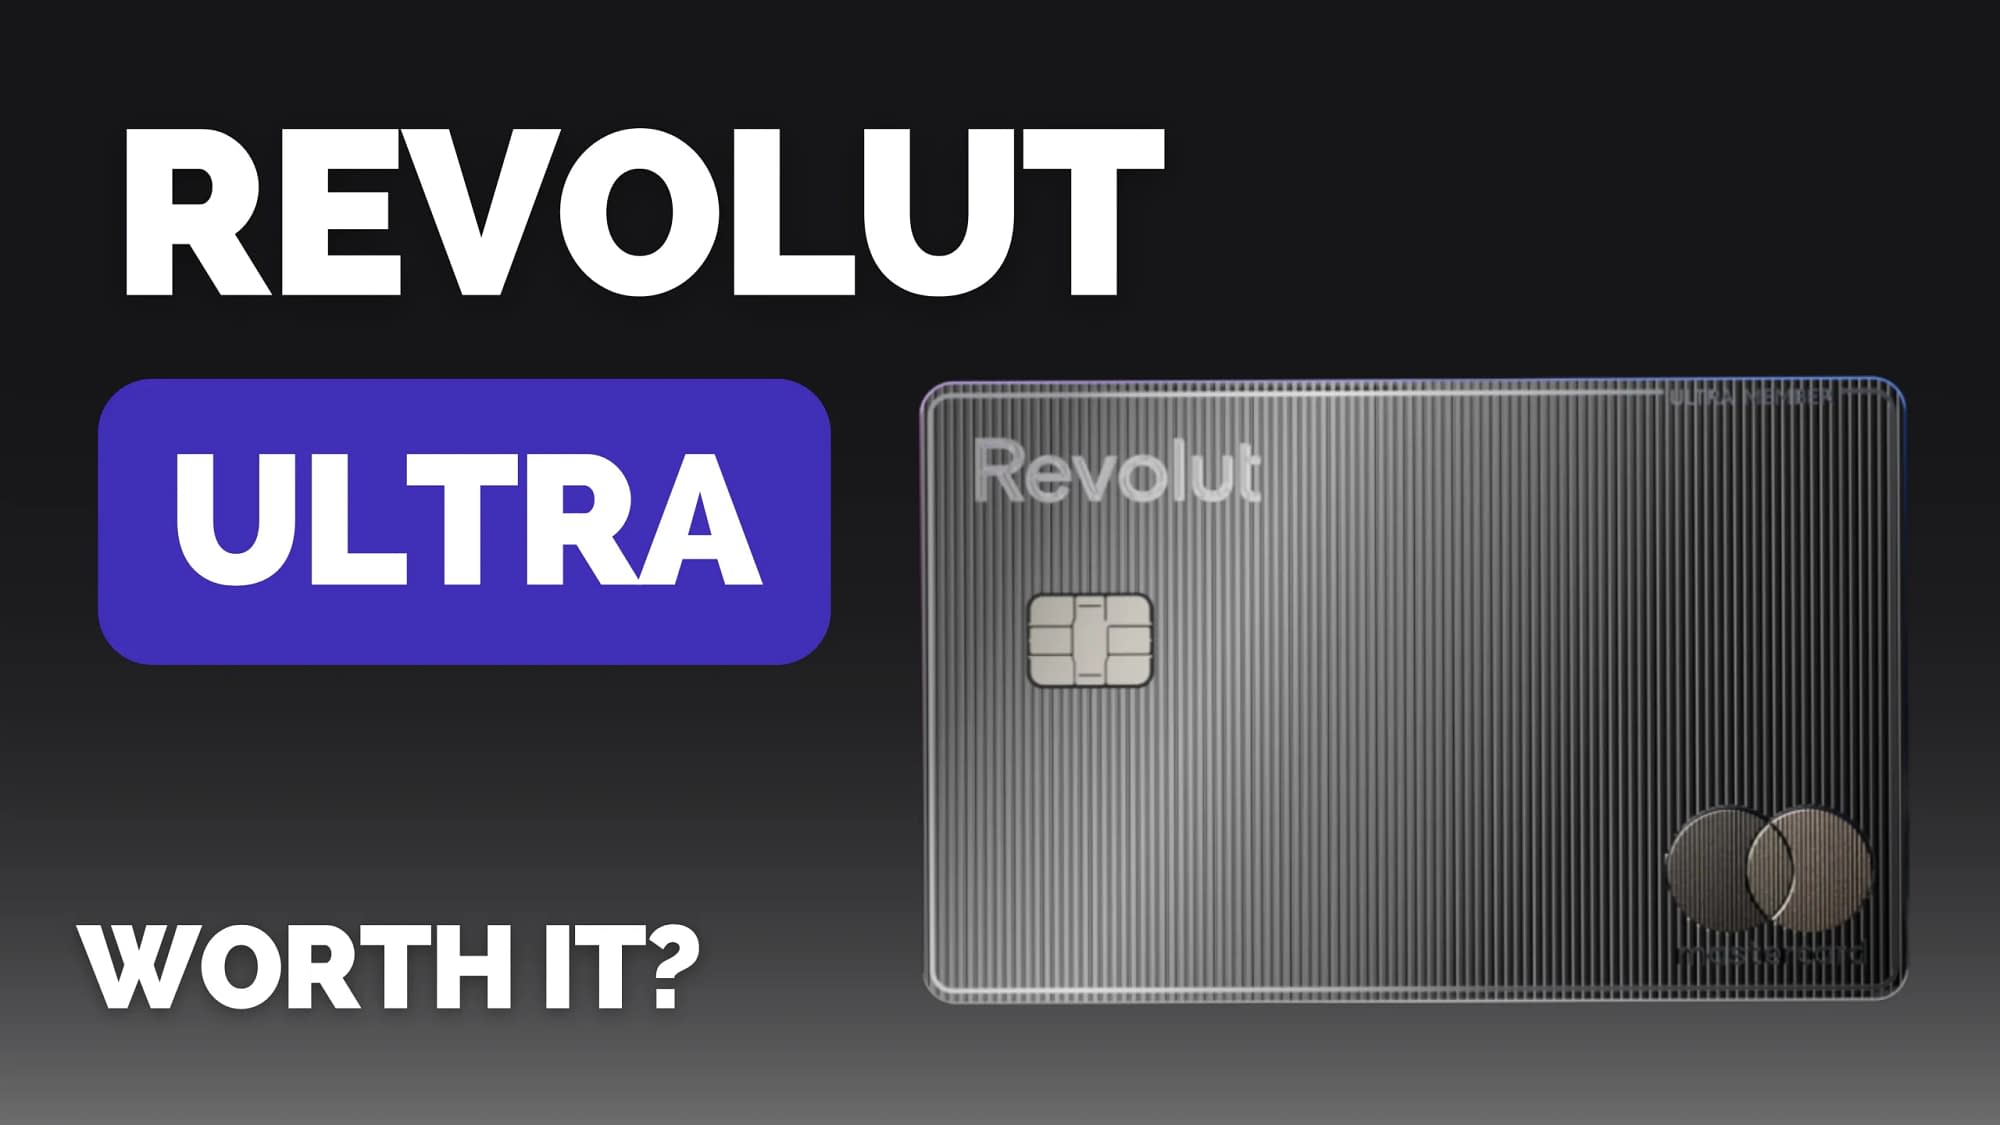 Revolut Ultra: Is It Worth It?